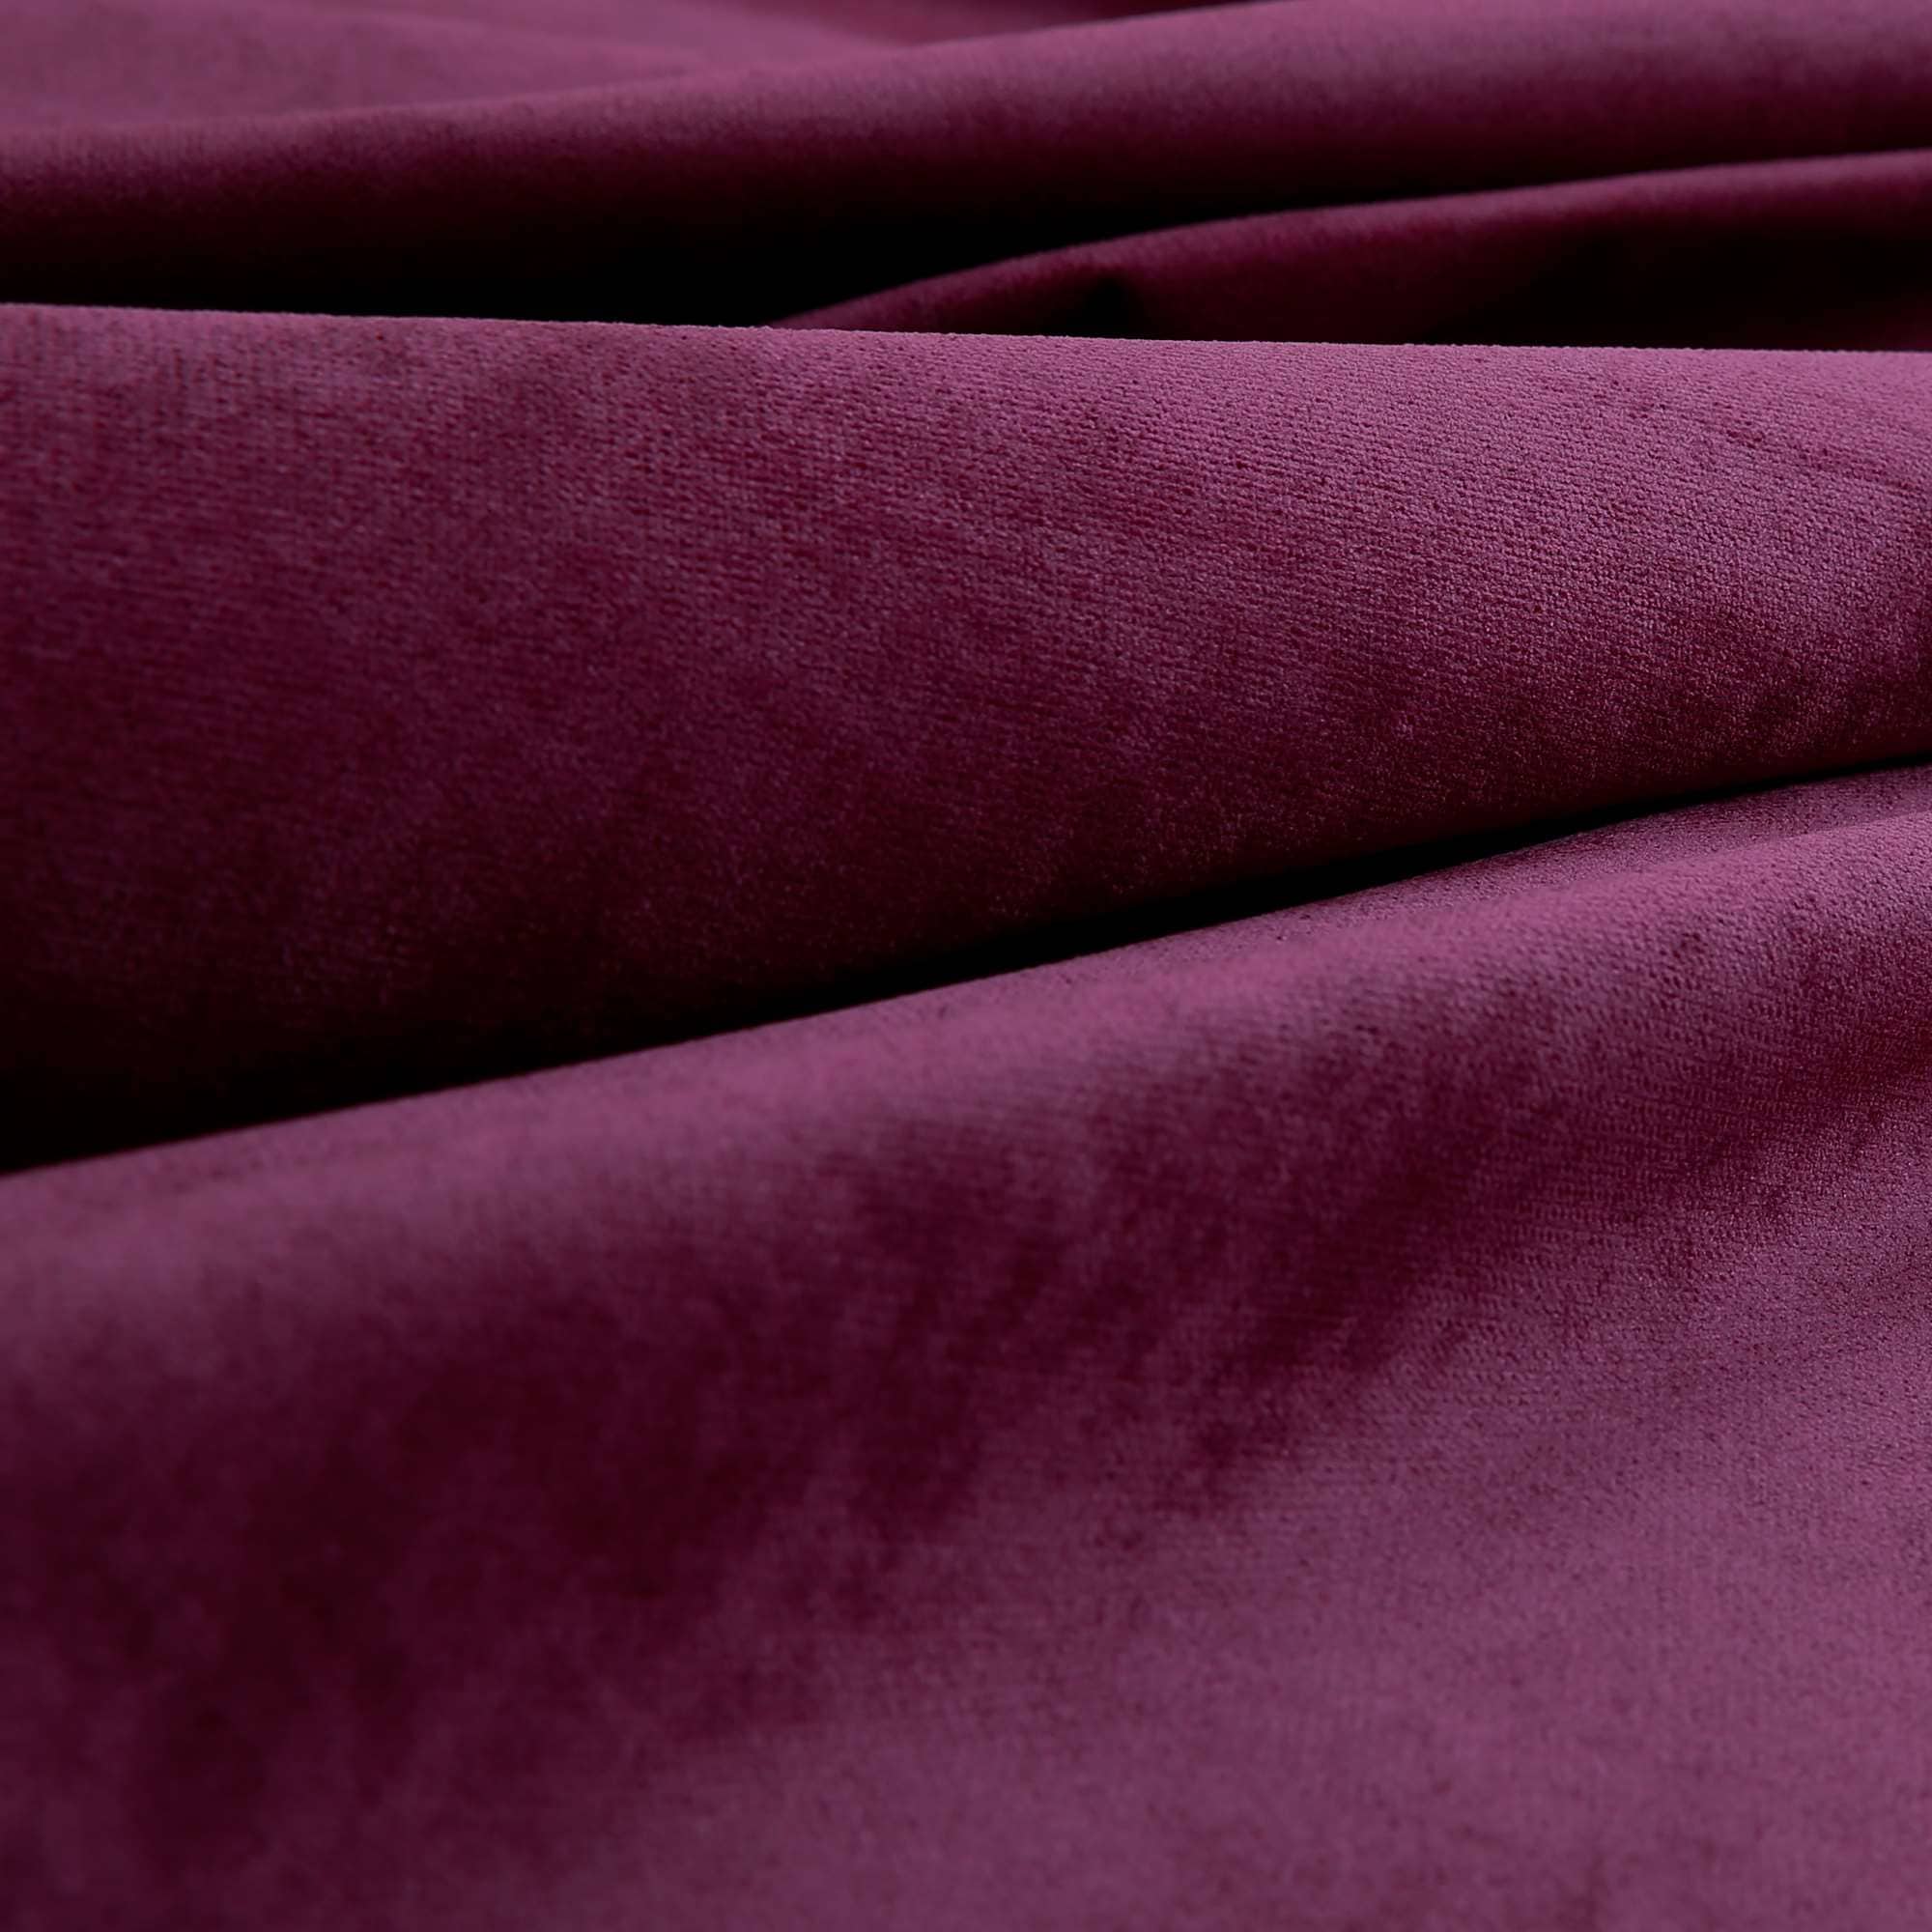 Velvet Texture Velvety Smooth Seamless Square Upholstery In